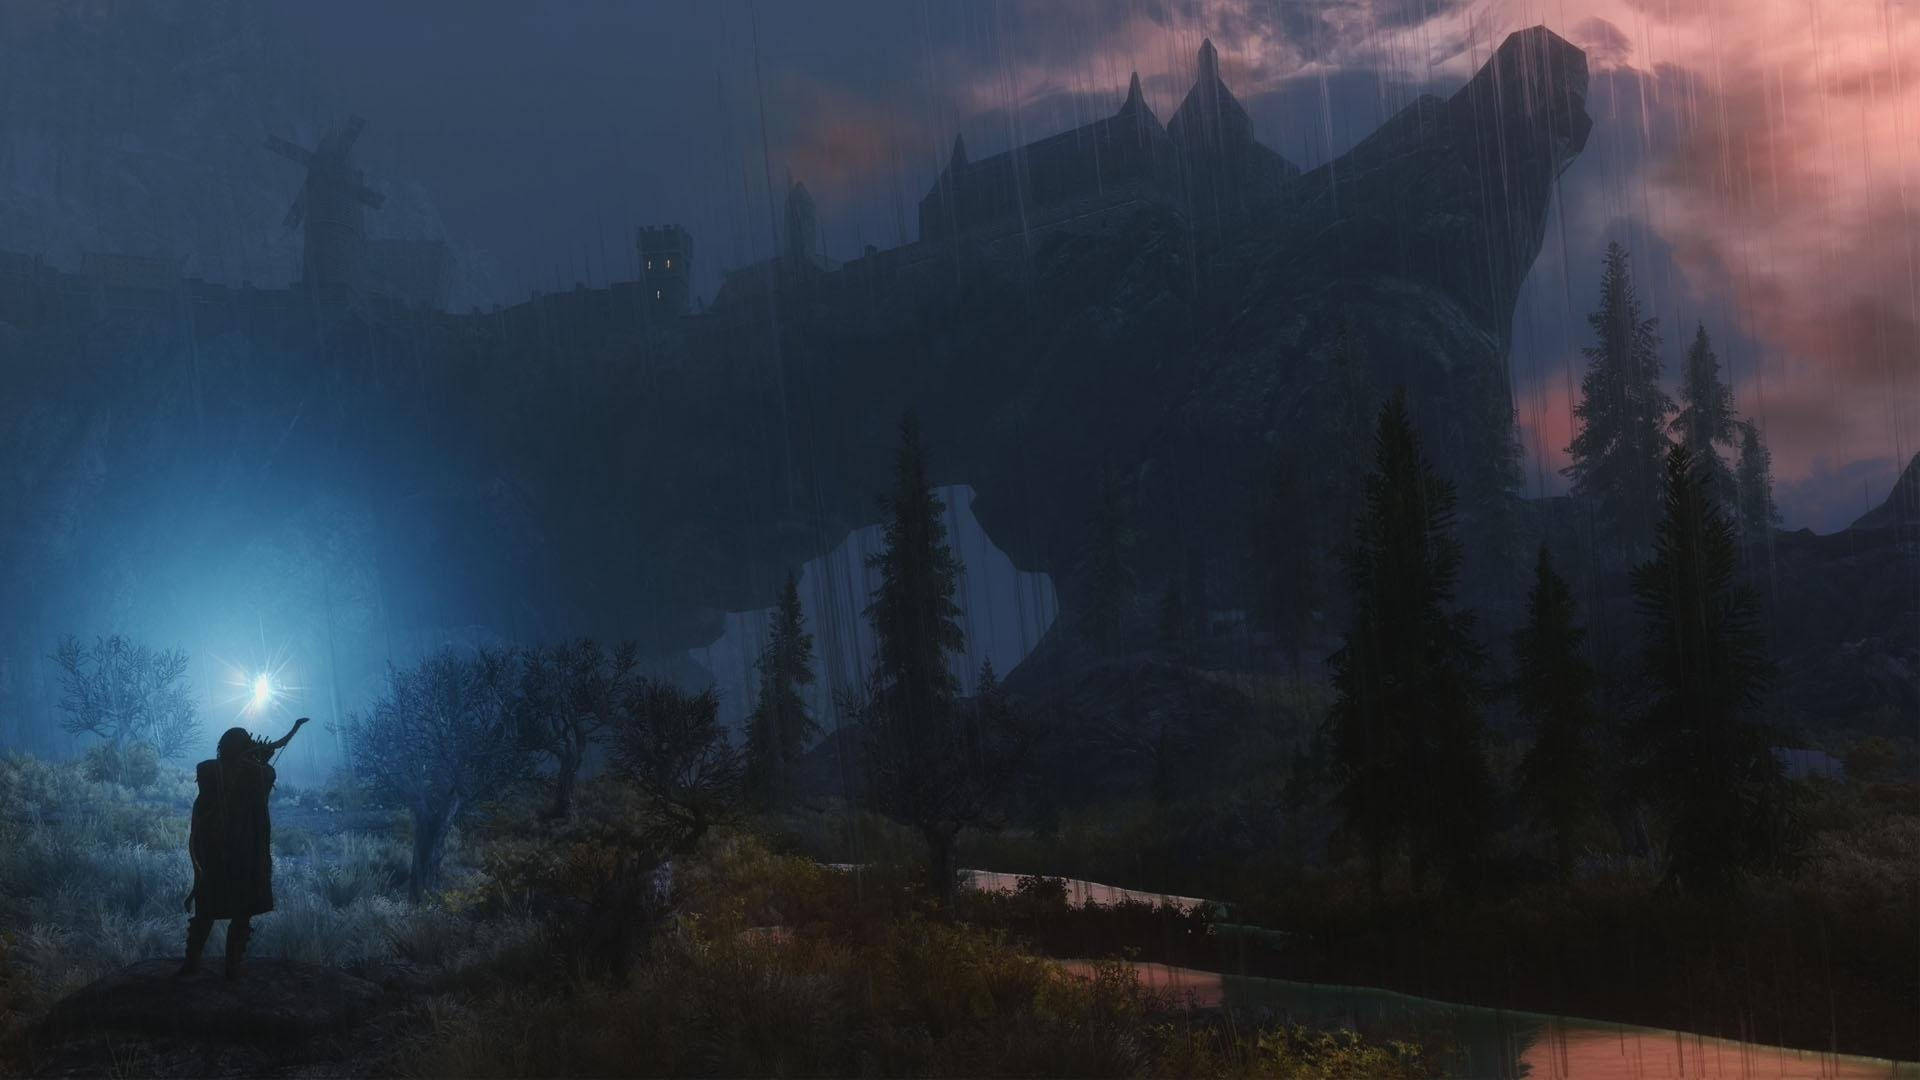 Explorael Impresionante Mundo De Fantasía De Mundo Abierto De Skyrim. Fondo de pantalla